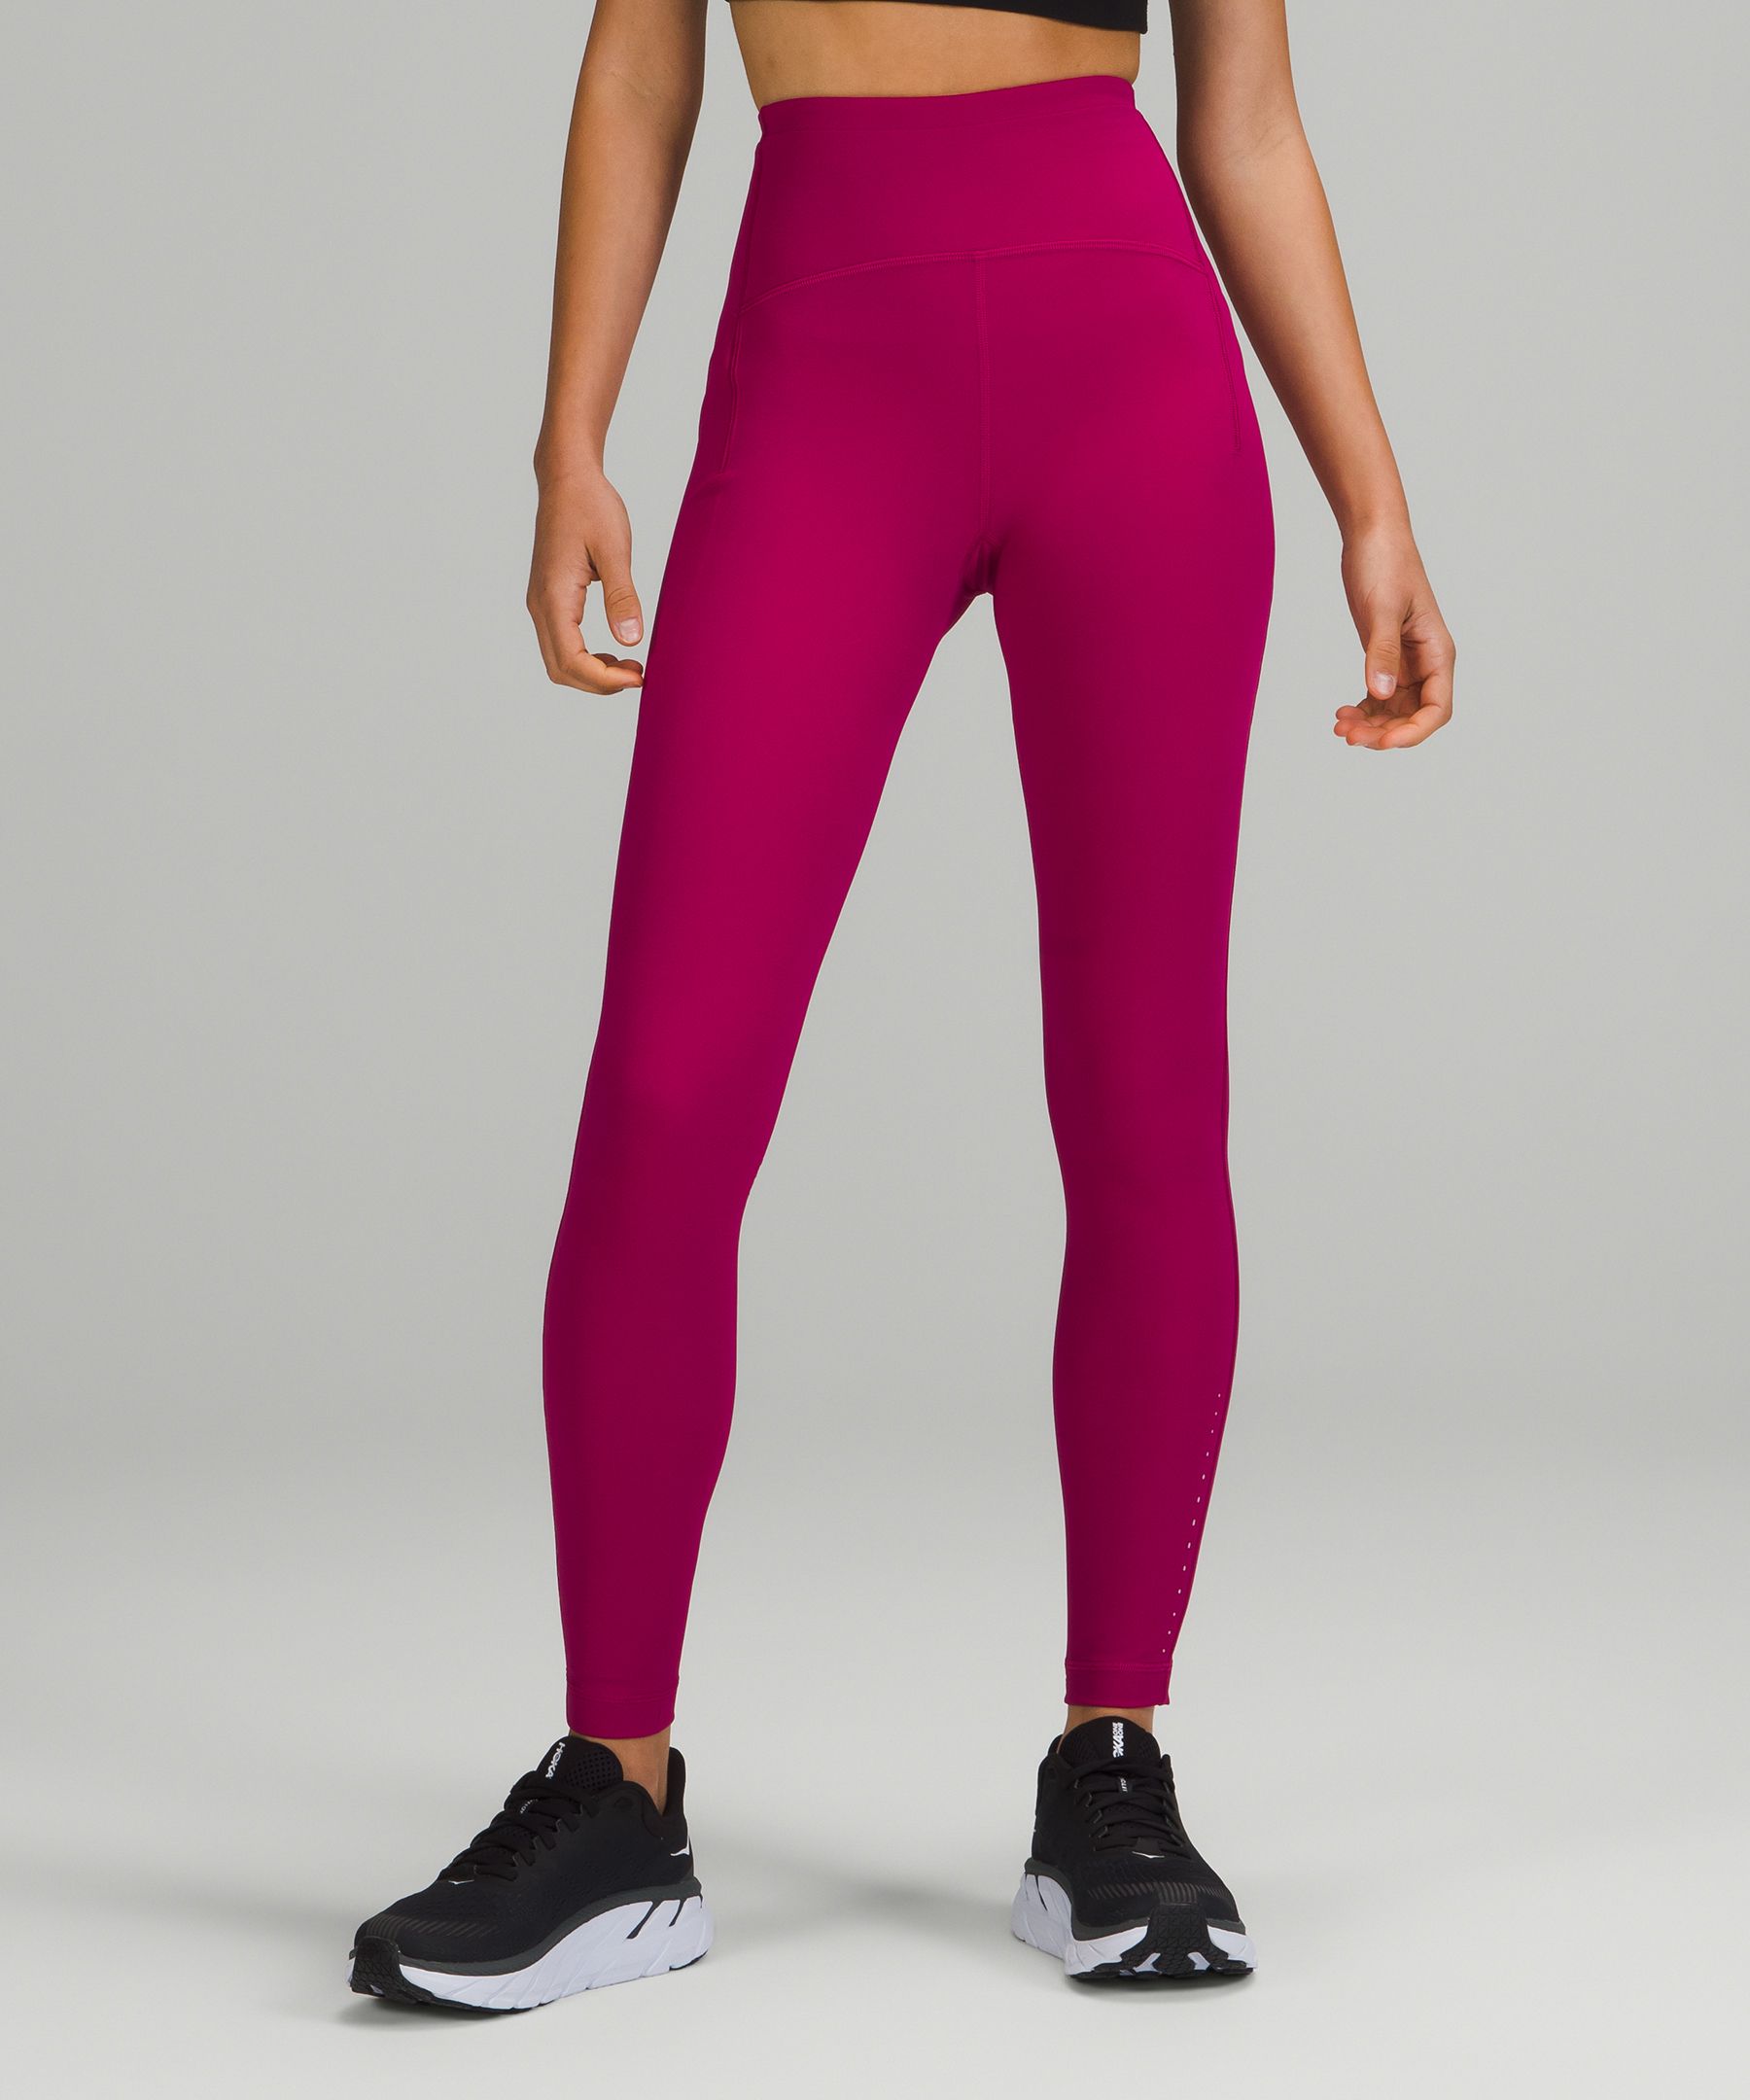 Lululemon customers SLAM the fitness retailer over $298 running leggings